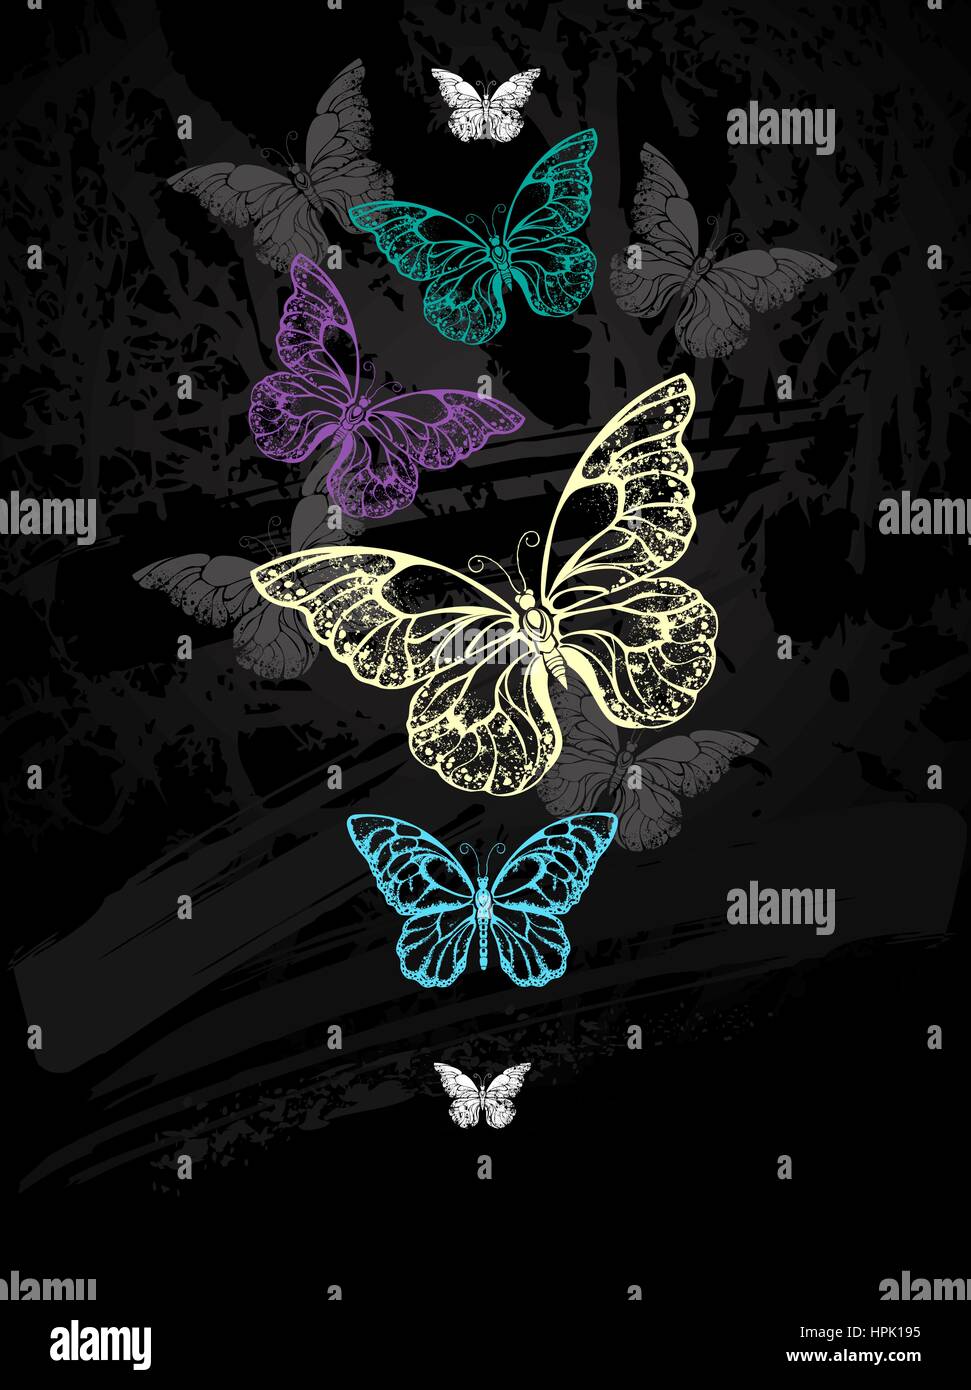 Herde von bunten Schmetterlingen Morpho auf schwarze Tafel mit Kreide gezeichnet. Design mit Schmetterlingen. Zeichnung mit Kreide. Schmetterling Morpho. Stock Vektor